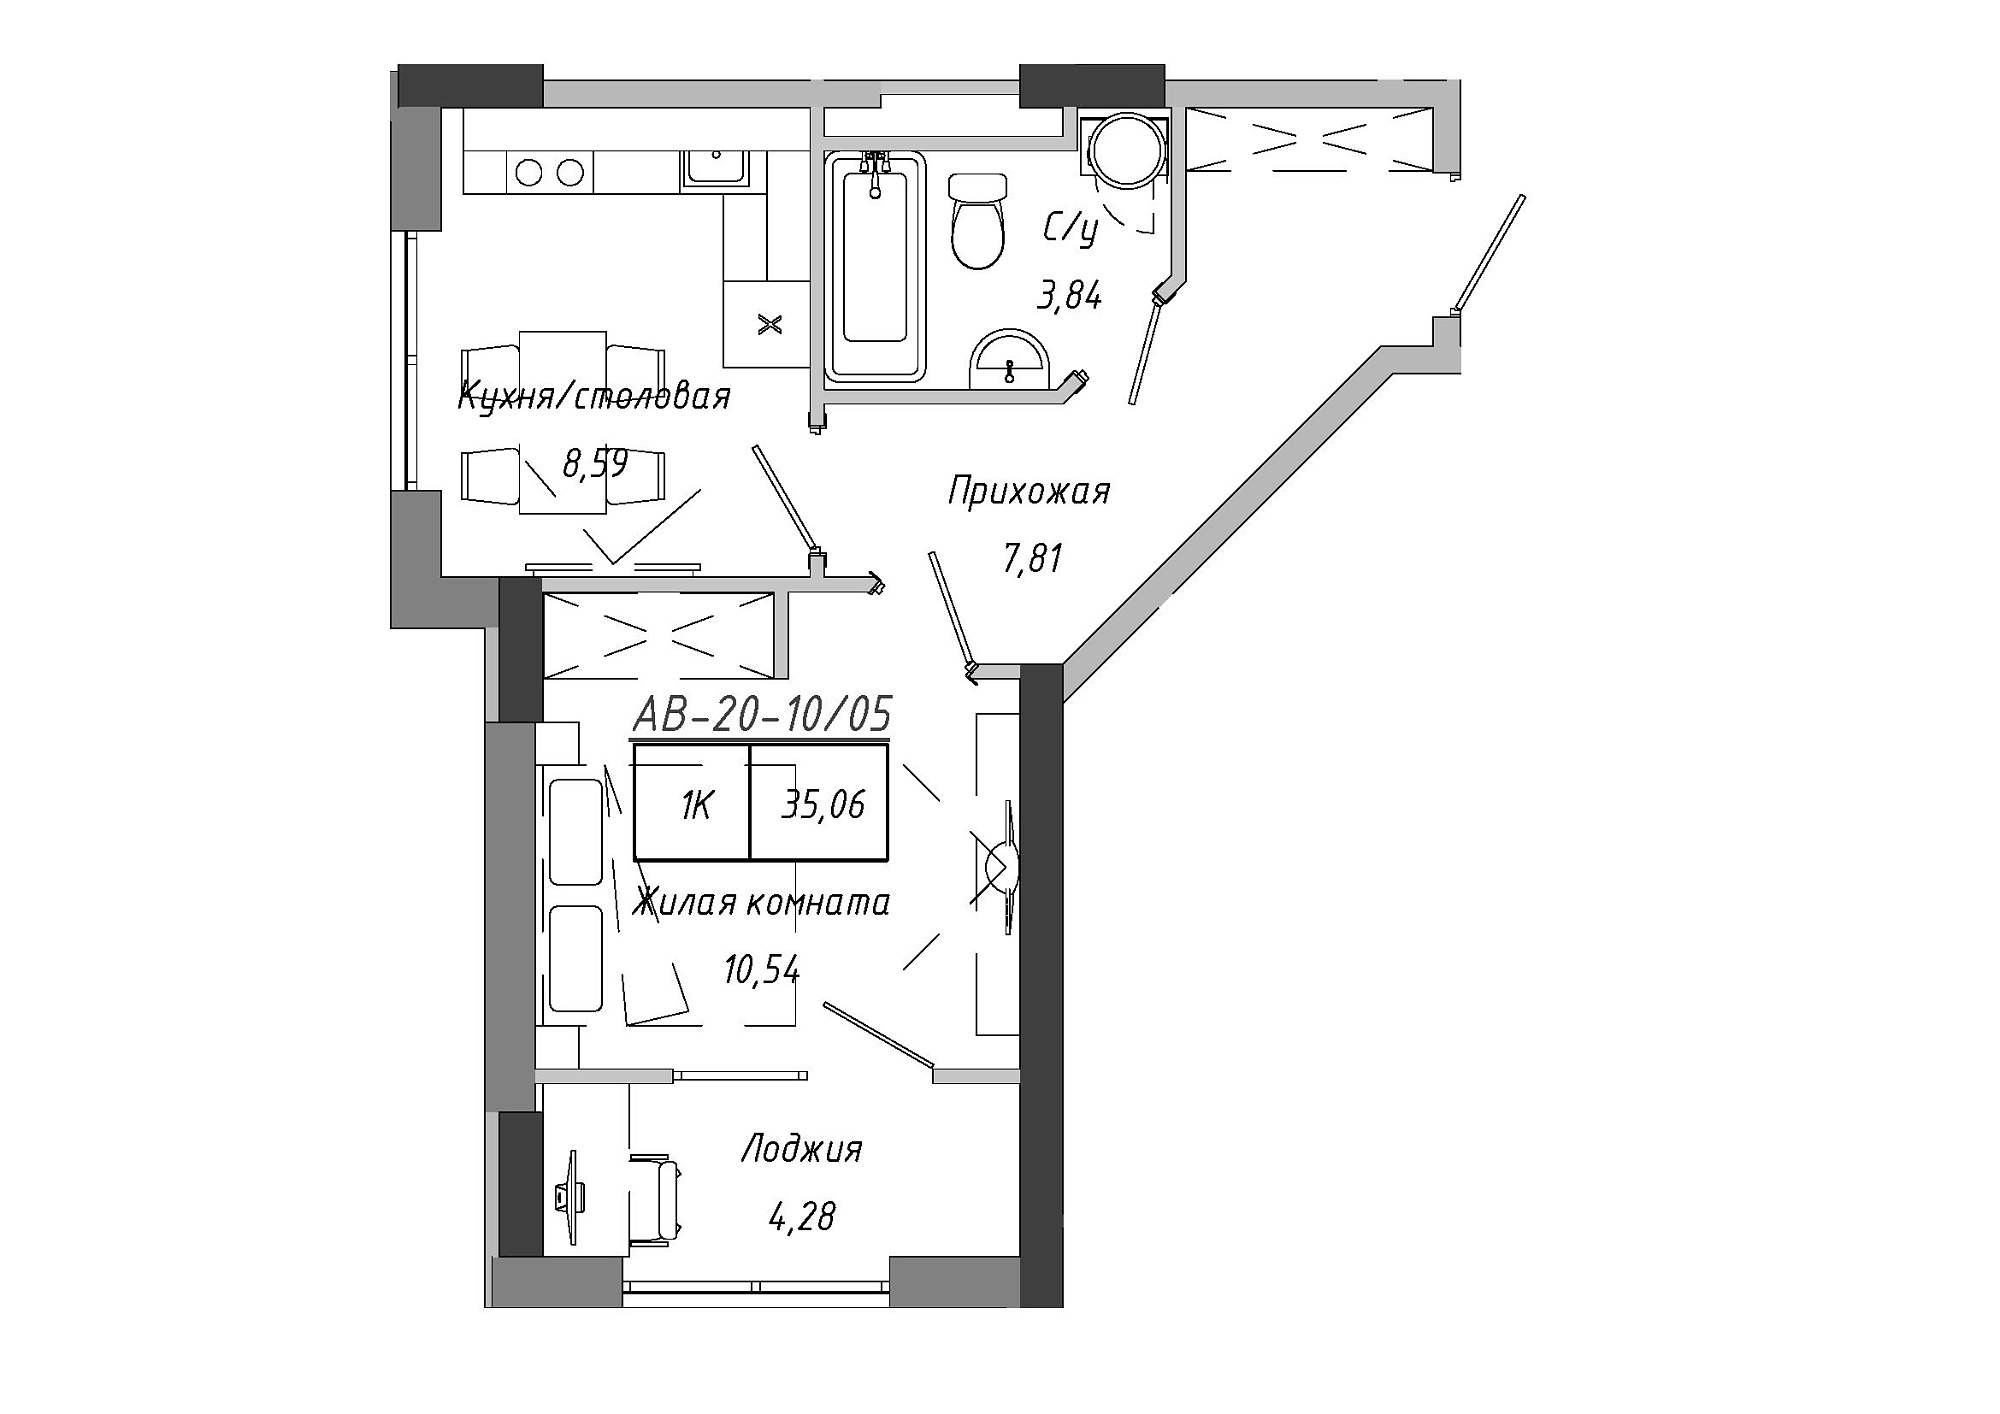 Планировка 1-к квартира площей 33.55м2, AB-20-10/00005.